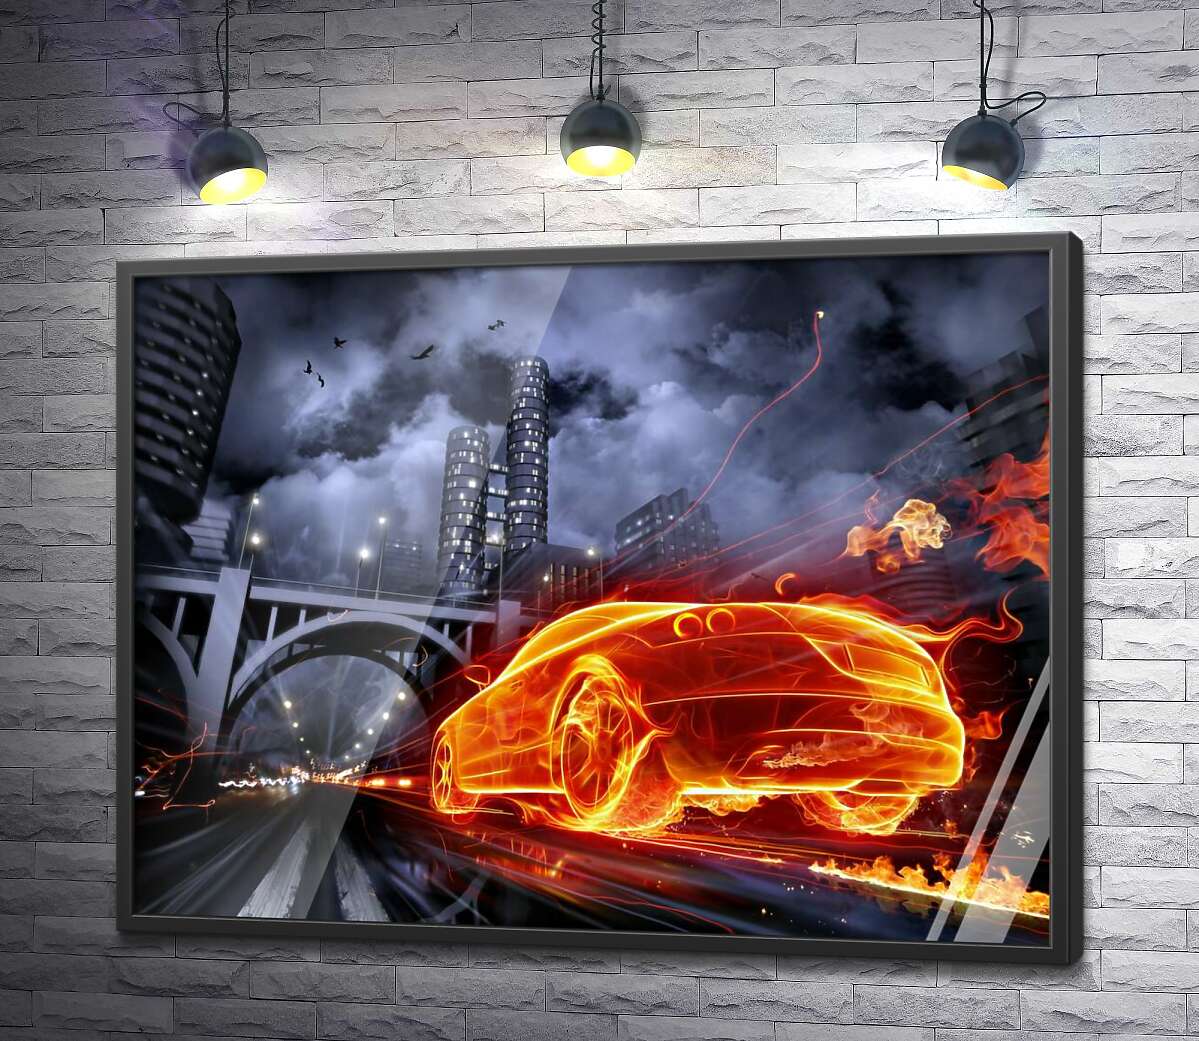 постер Огненный призрак автомобиля несется под мост ночного города